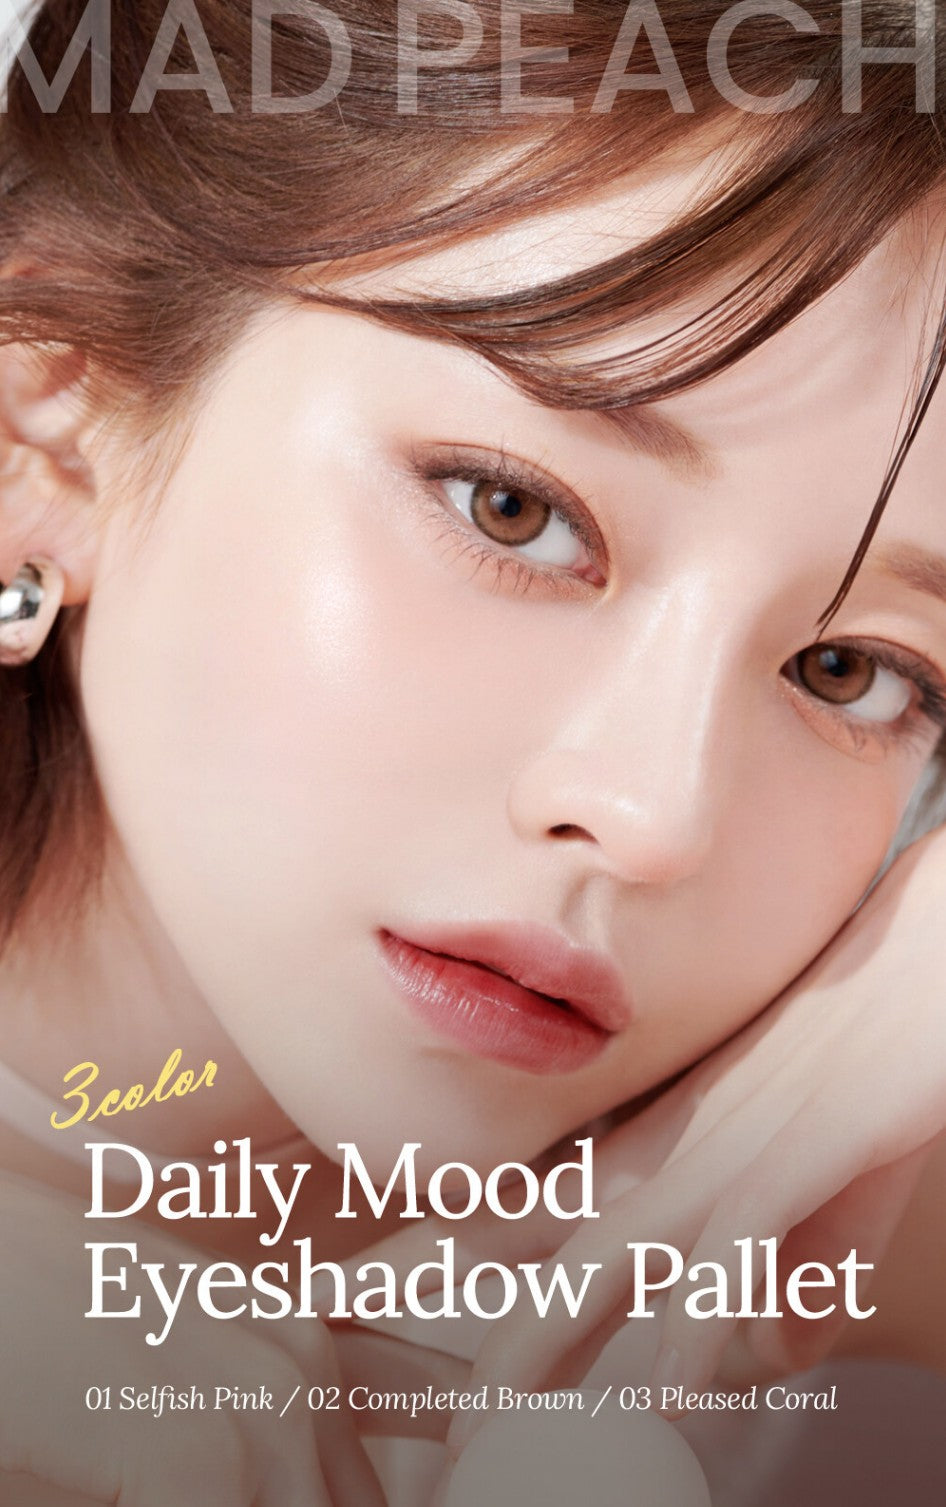 Mad Peach] Daily Mood Palette – Eyeshadow mochiskin